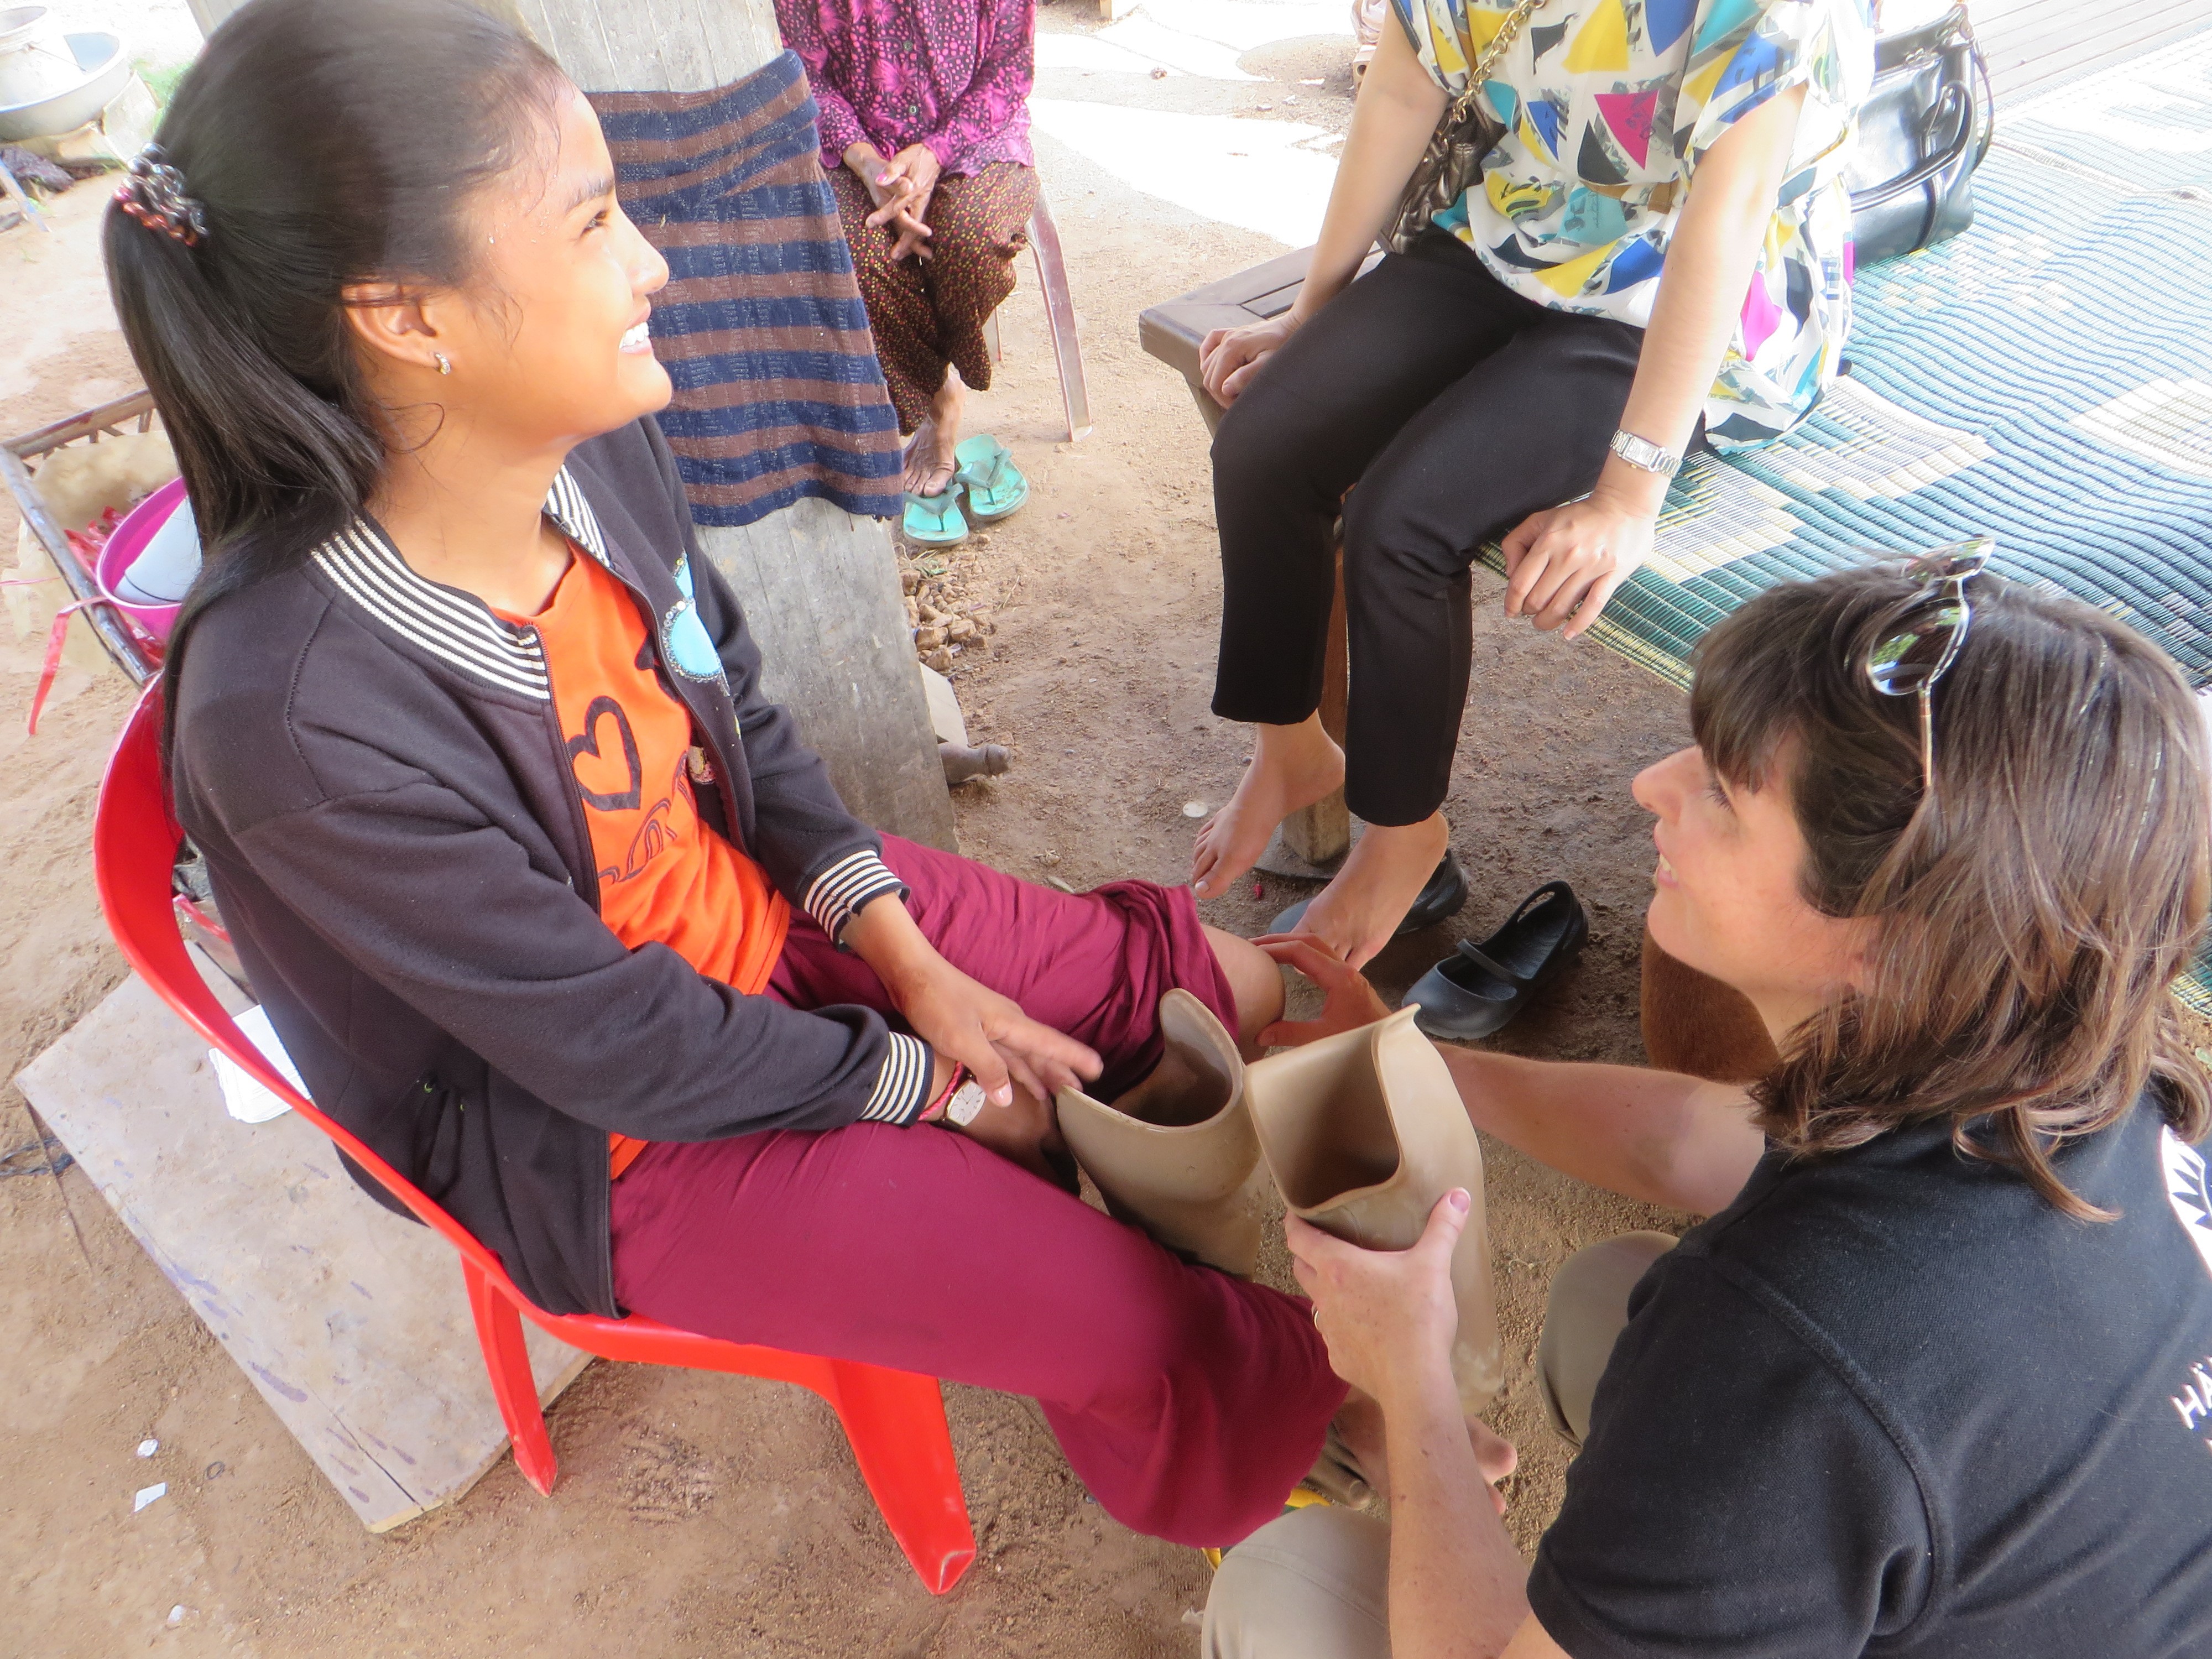 Professor Nerrolyn Ramstrand provar ut proteser på ung flicka i Kambodja. De är utomhus.